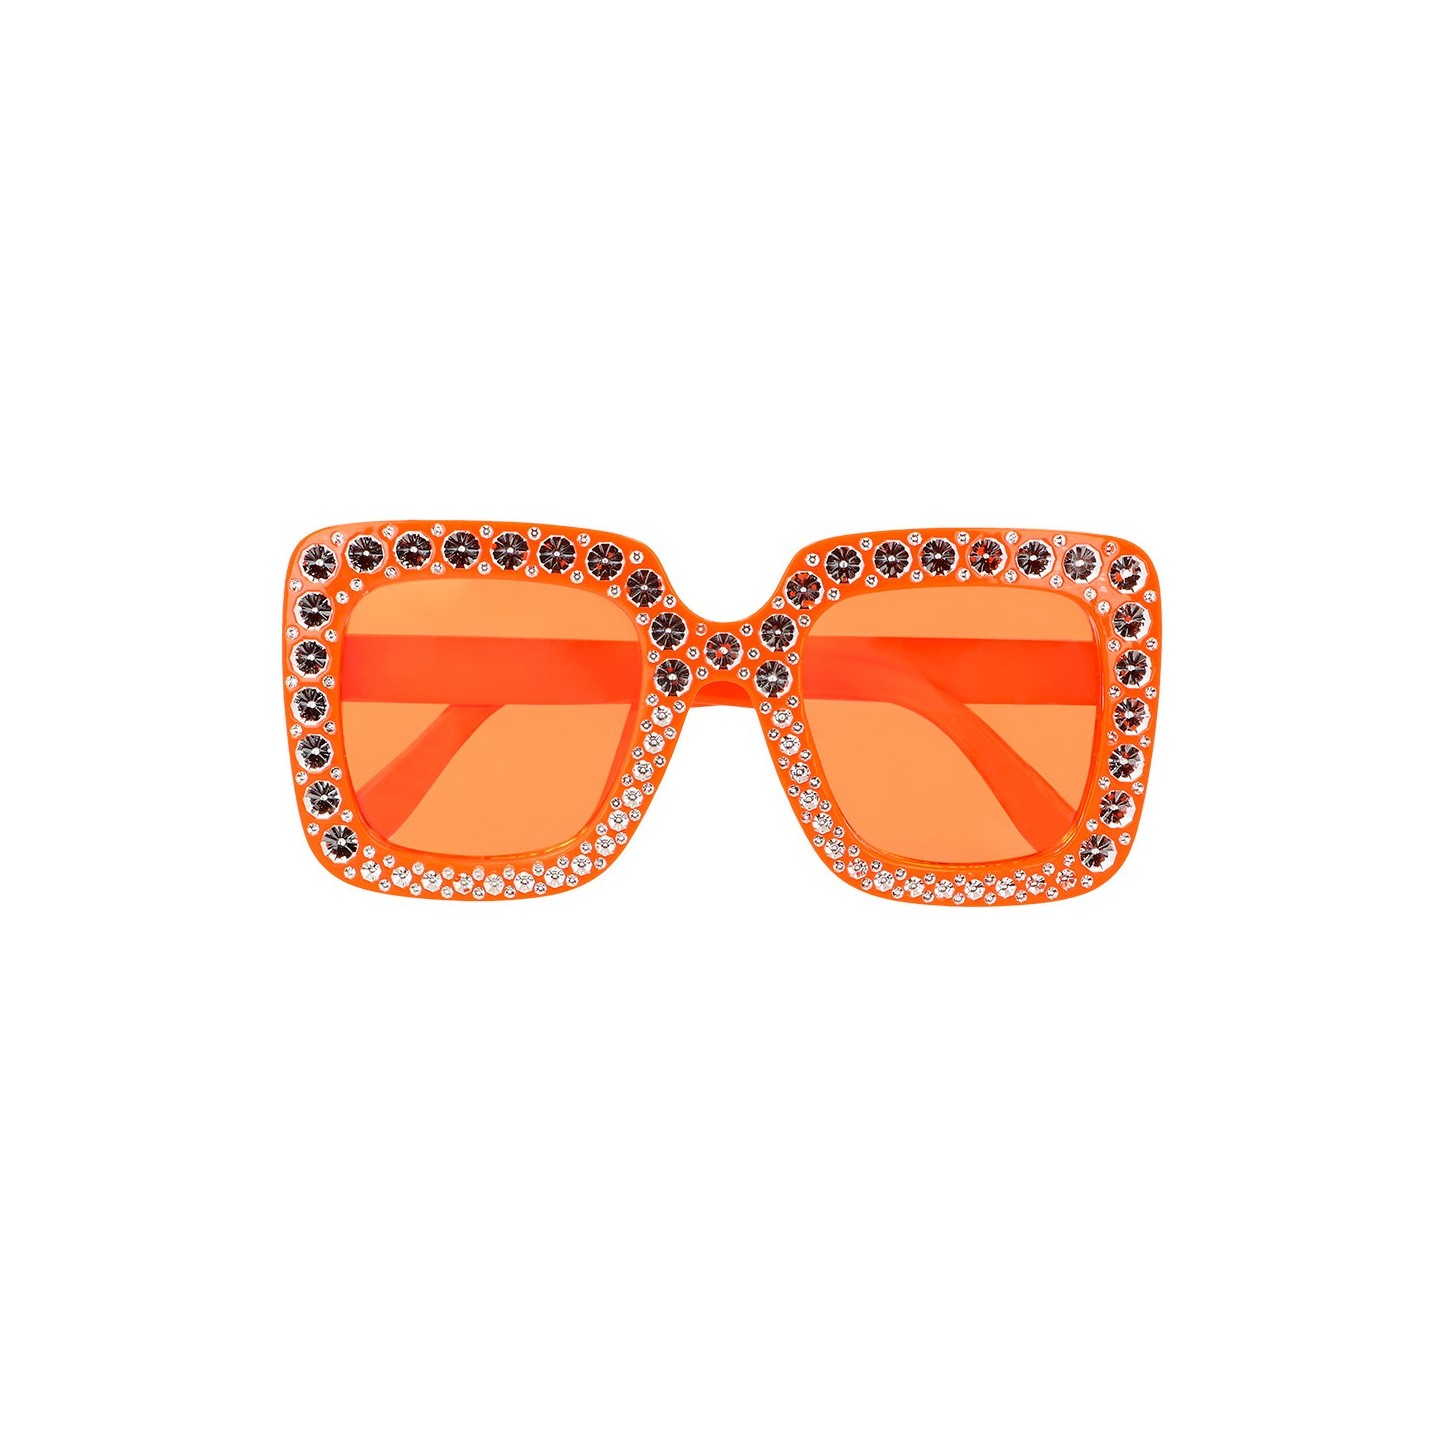 foute feestbril oranje party bril carnaval